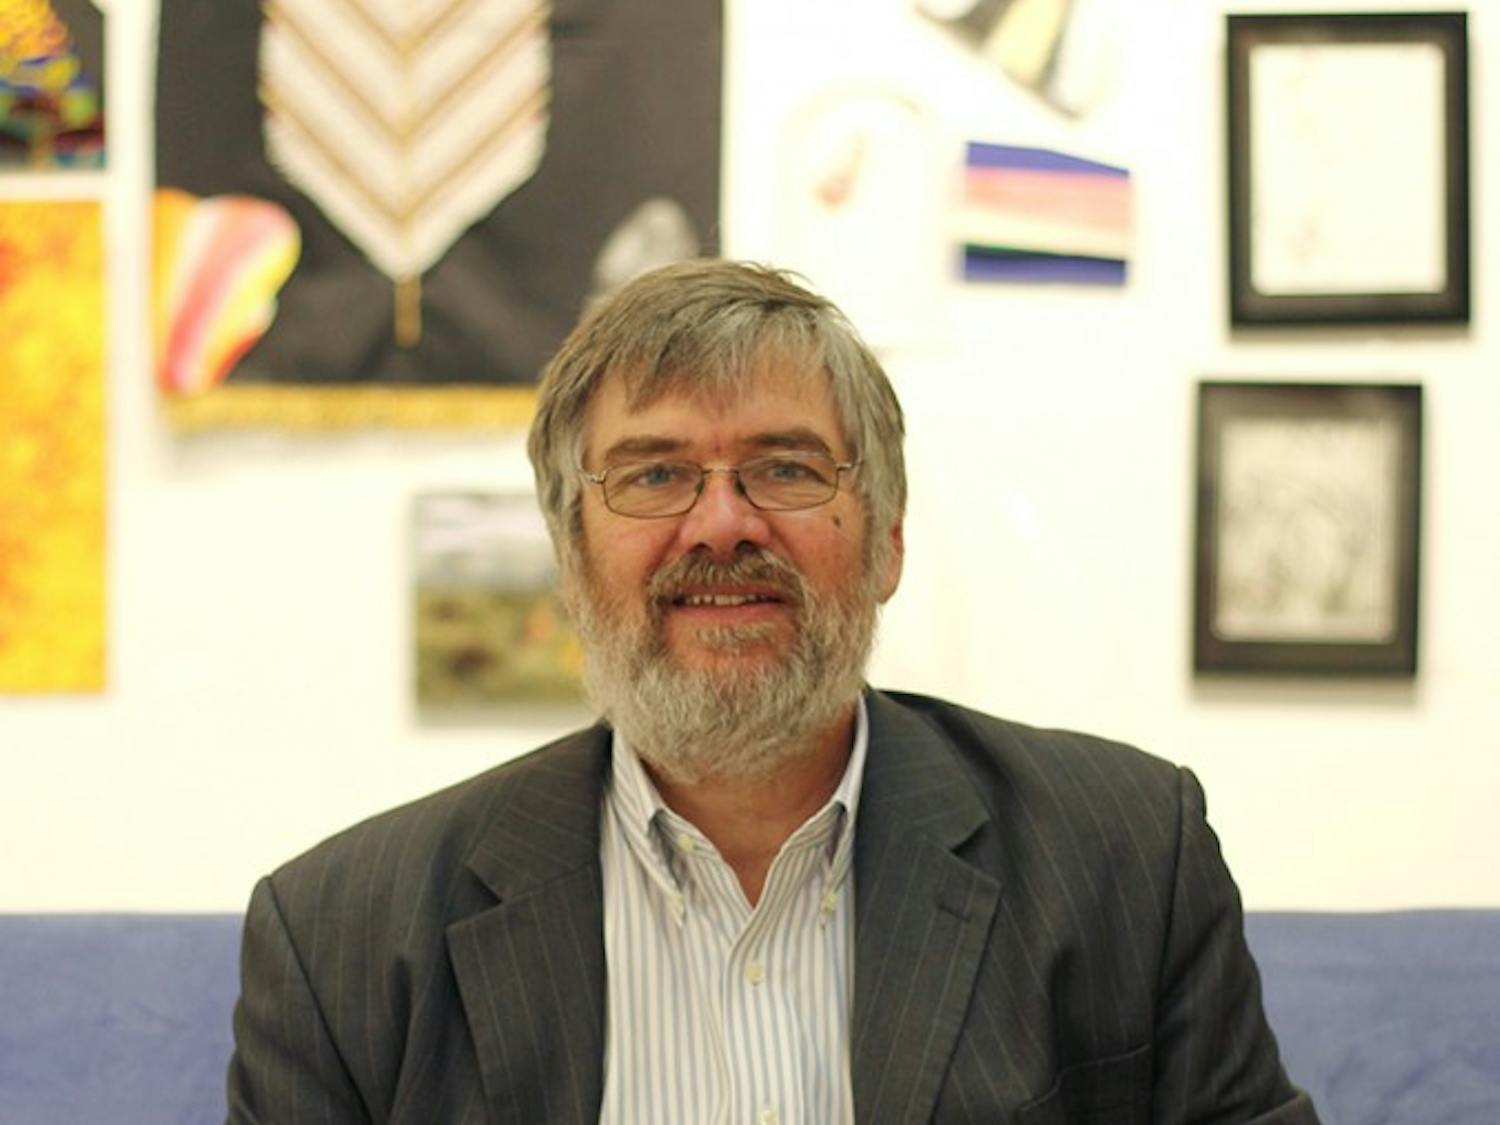 Art Menius, director of the Arts Center in Carrboro